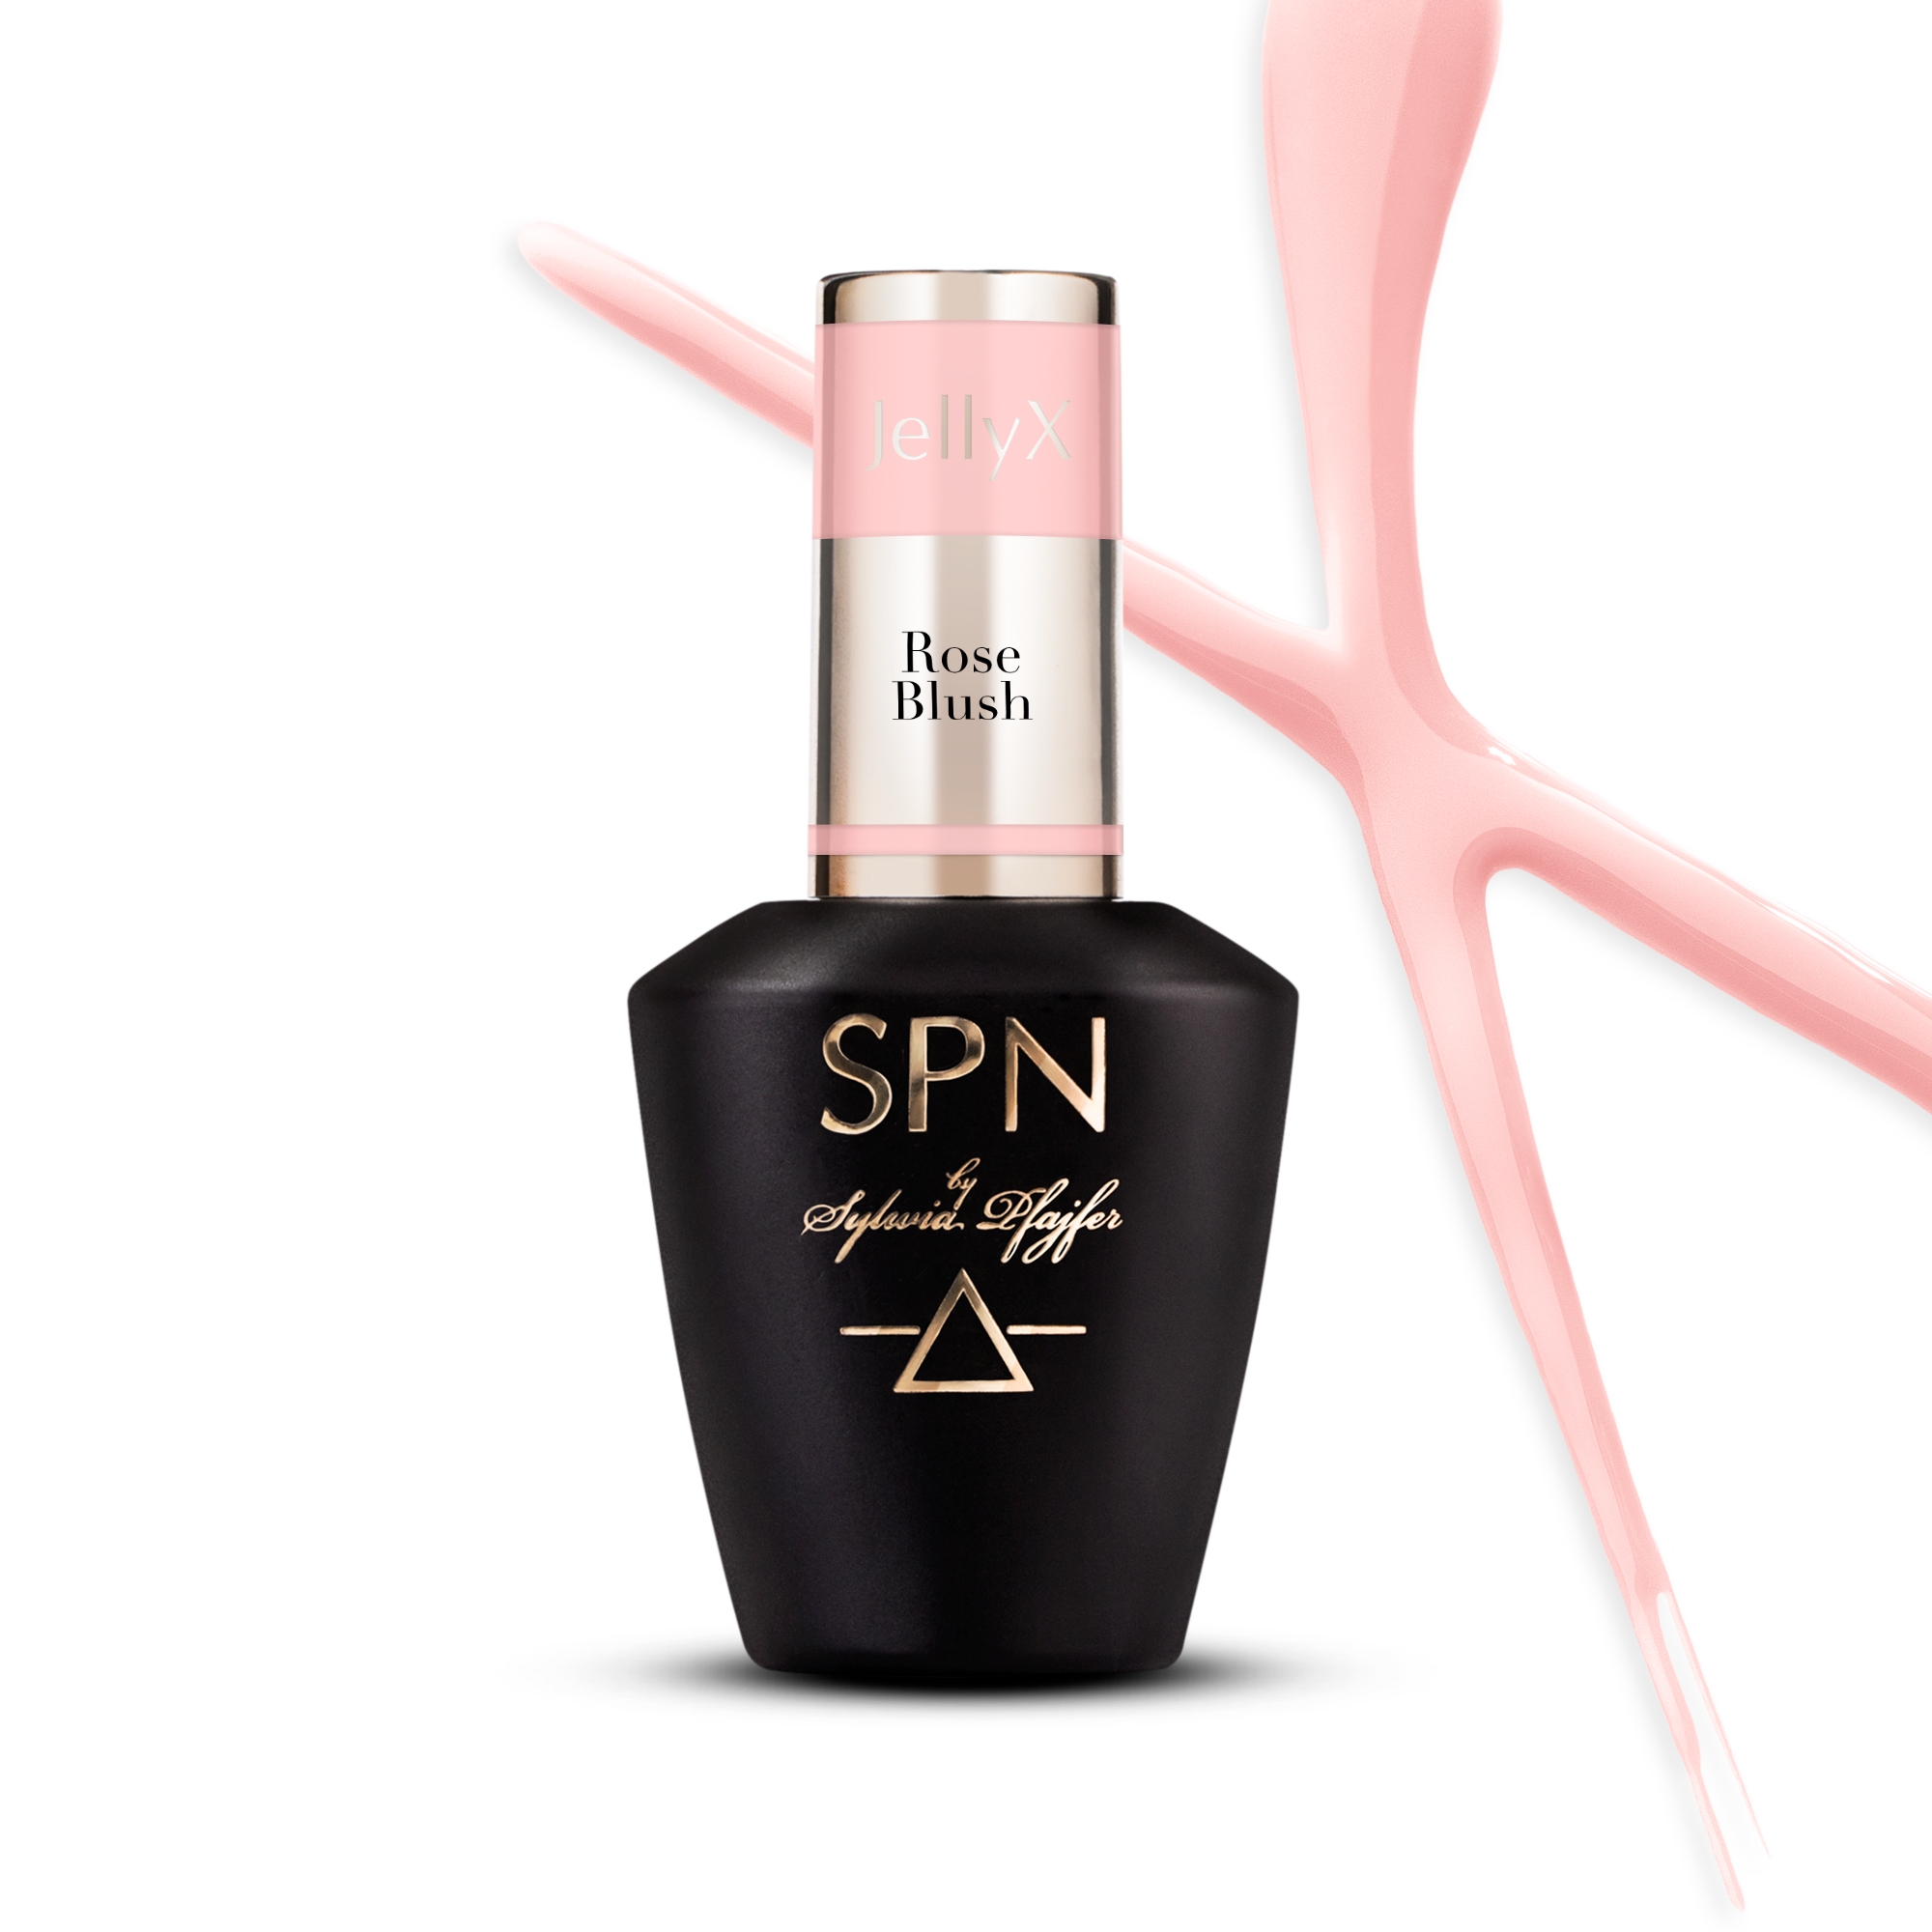 SPN Nails - Gel in a bottle JellyX Rose Blush 8 ml